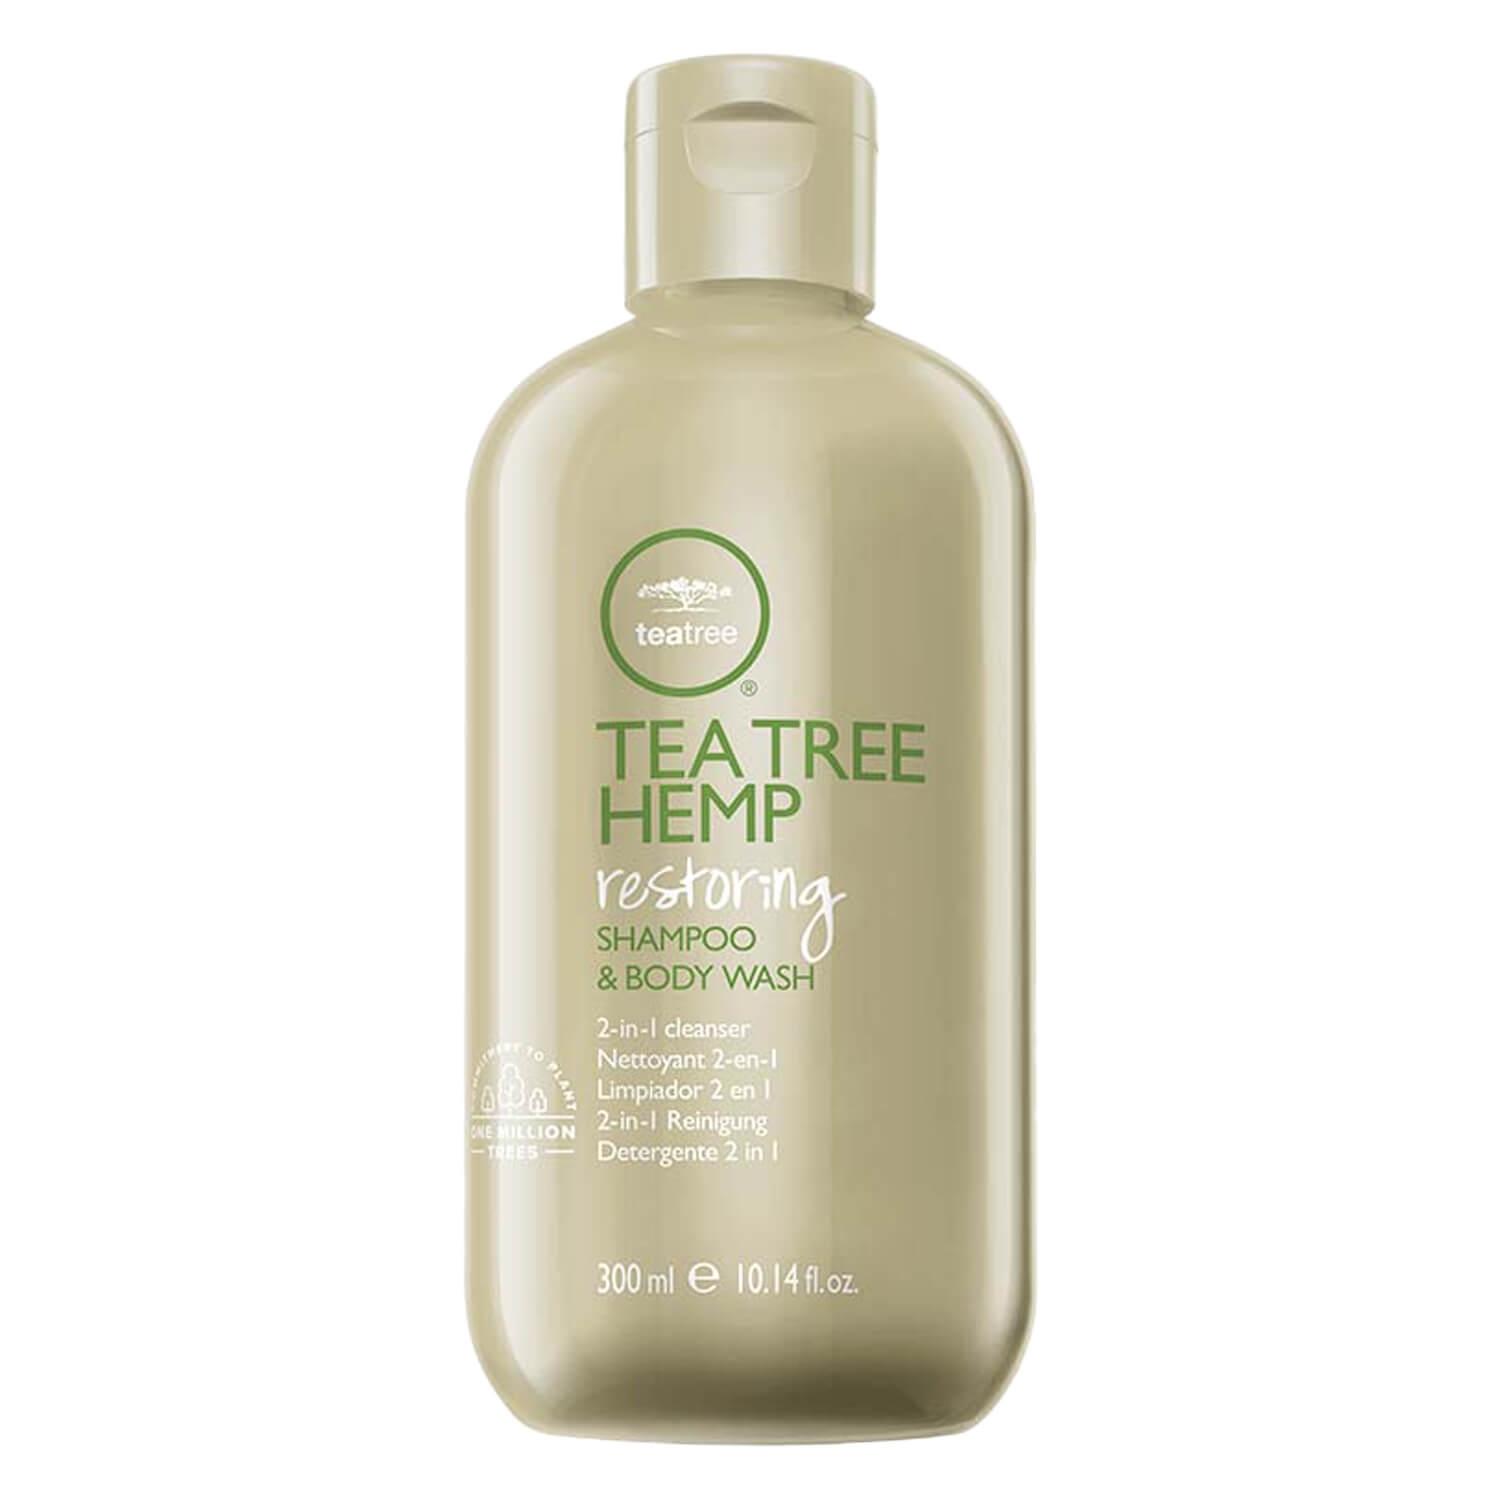 Product image from Tea Tree Hemp - Shampoo and Body Wash